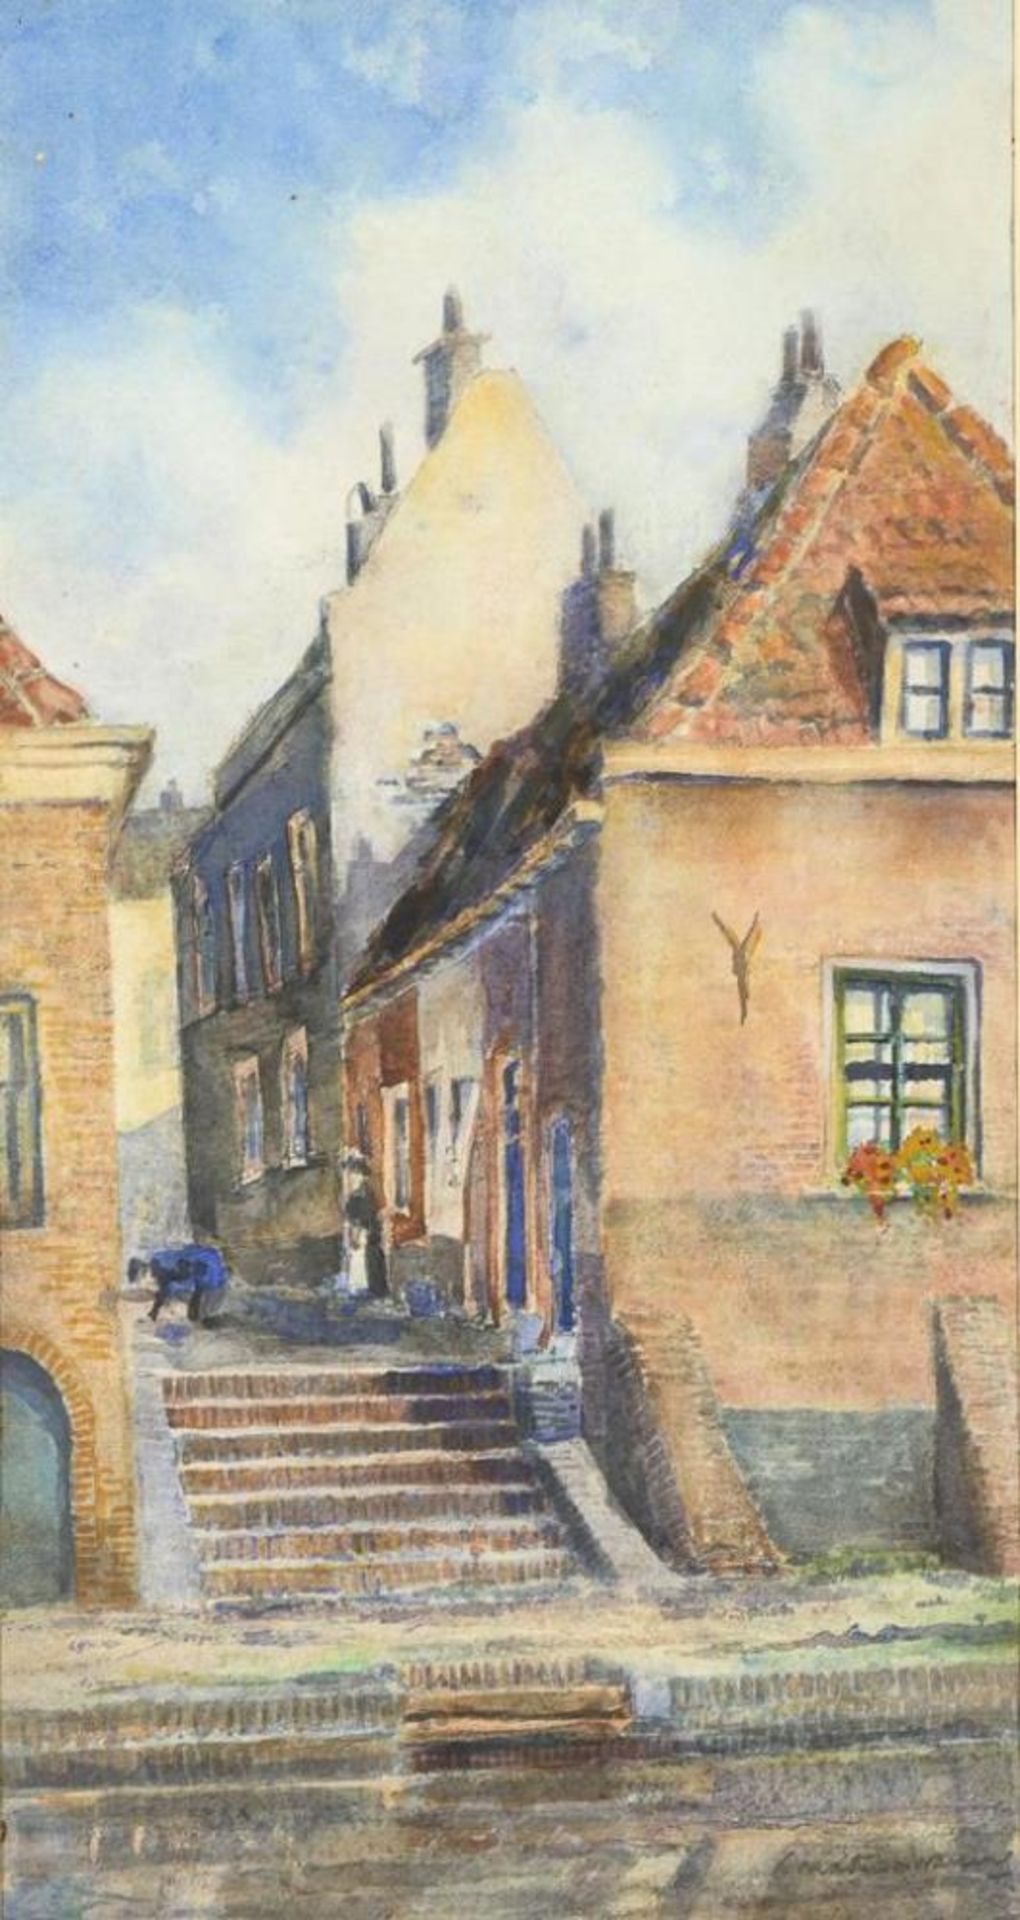 WANING, Martin van (1889 Den Haag - 1972 Dokkum). Häusergasse am Wasser.